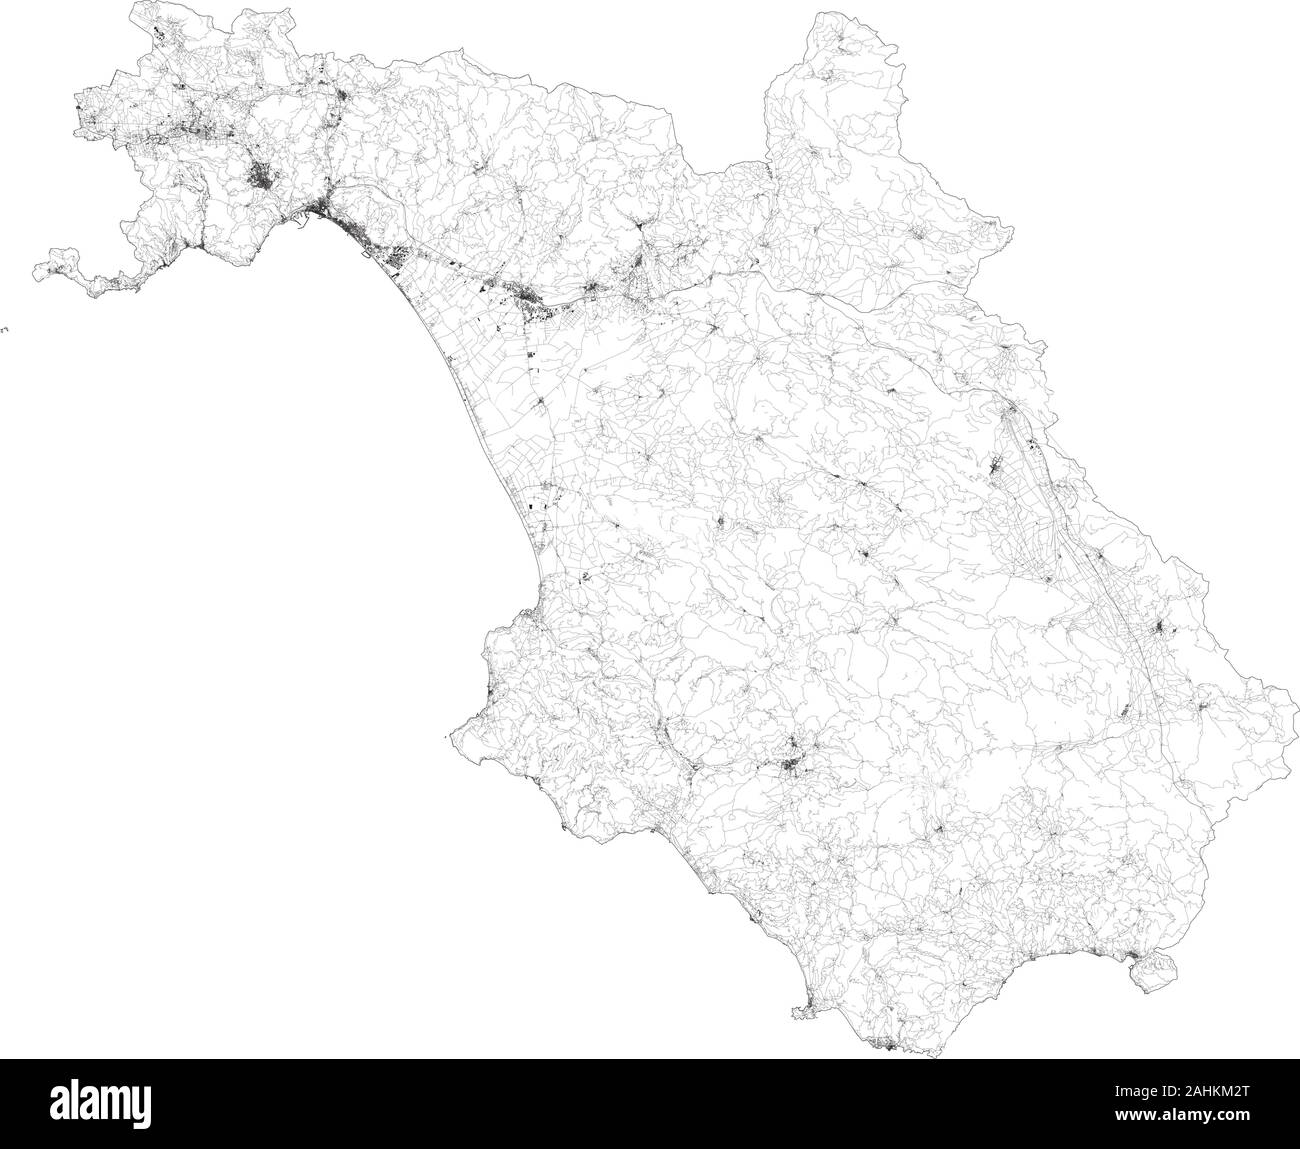 Sat-Karte der Provinz Salerno Städte und Straßen, Gebäude und Straßen der Umgebung. Region Kampanien, Italien. Karte Straßen Stock Vektor